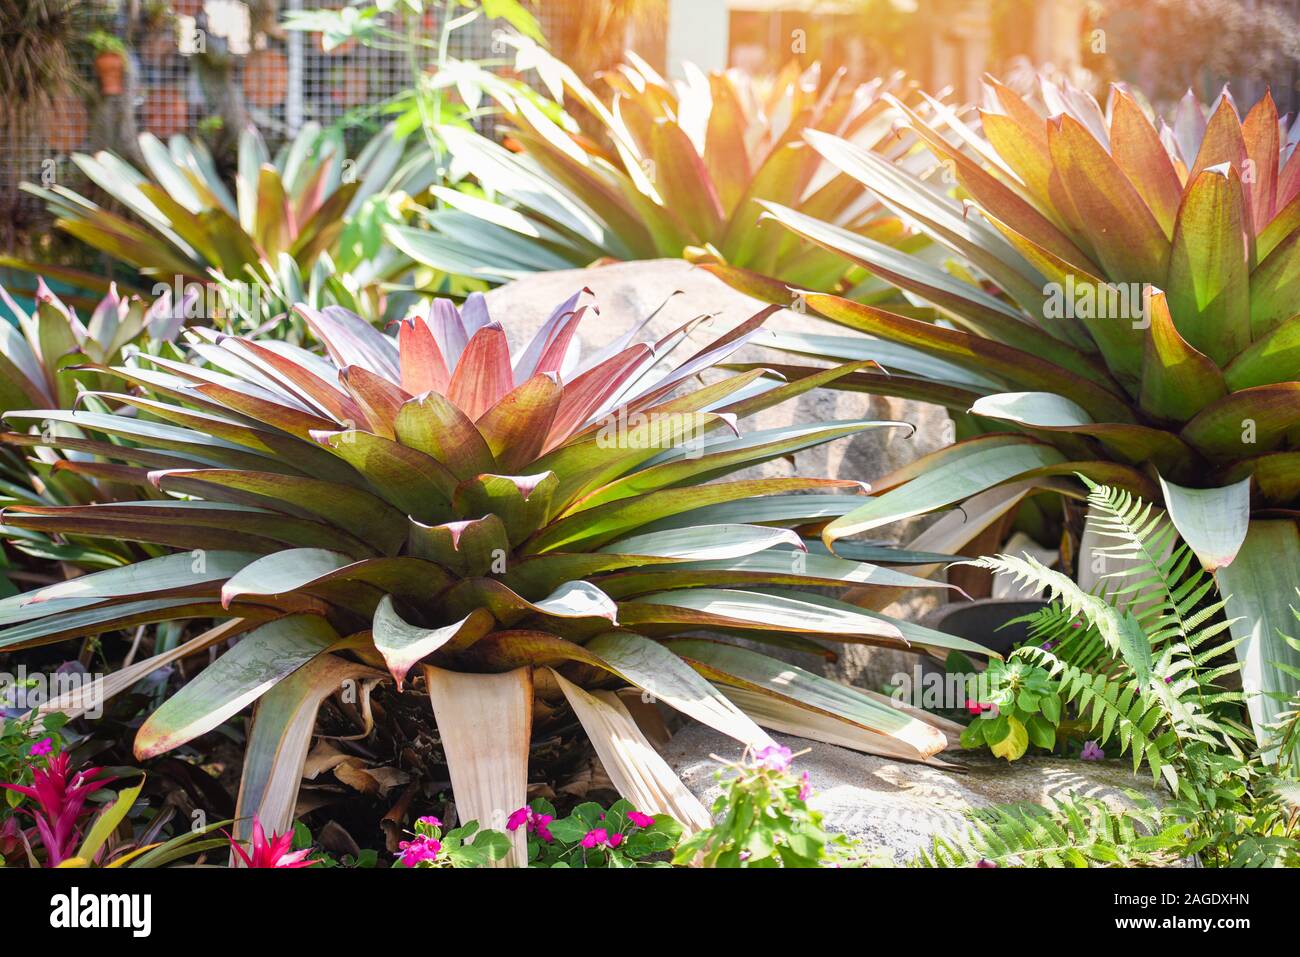 Las plantas ornamentales en el jardín / hojas verdes de plantas tropicales de hoja grande bromelia seccionado Foto de stock